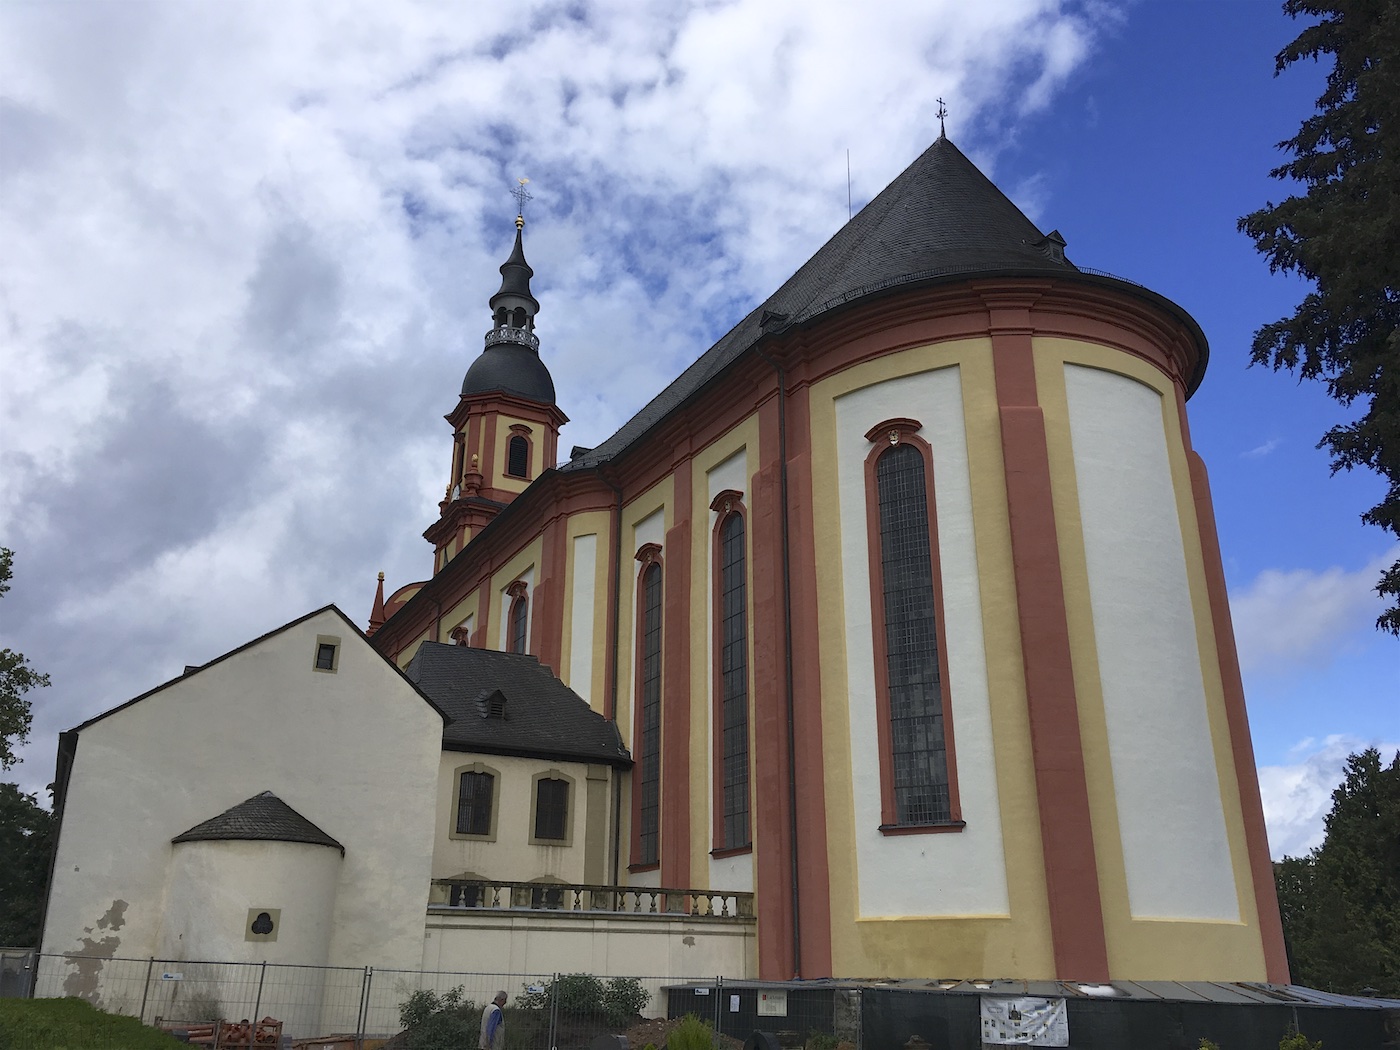 Besuch der Pfarrkirche St. Paulin, Trier